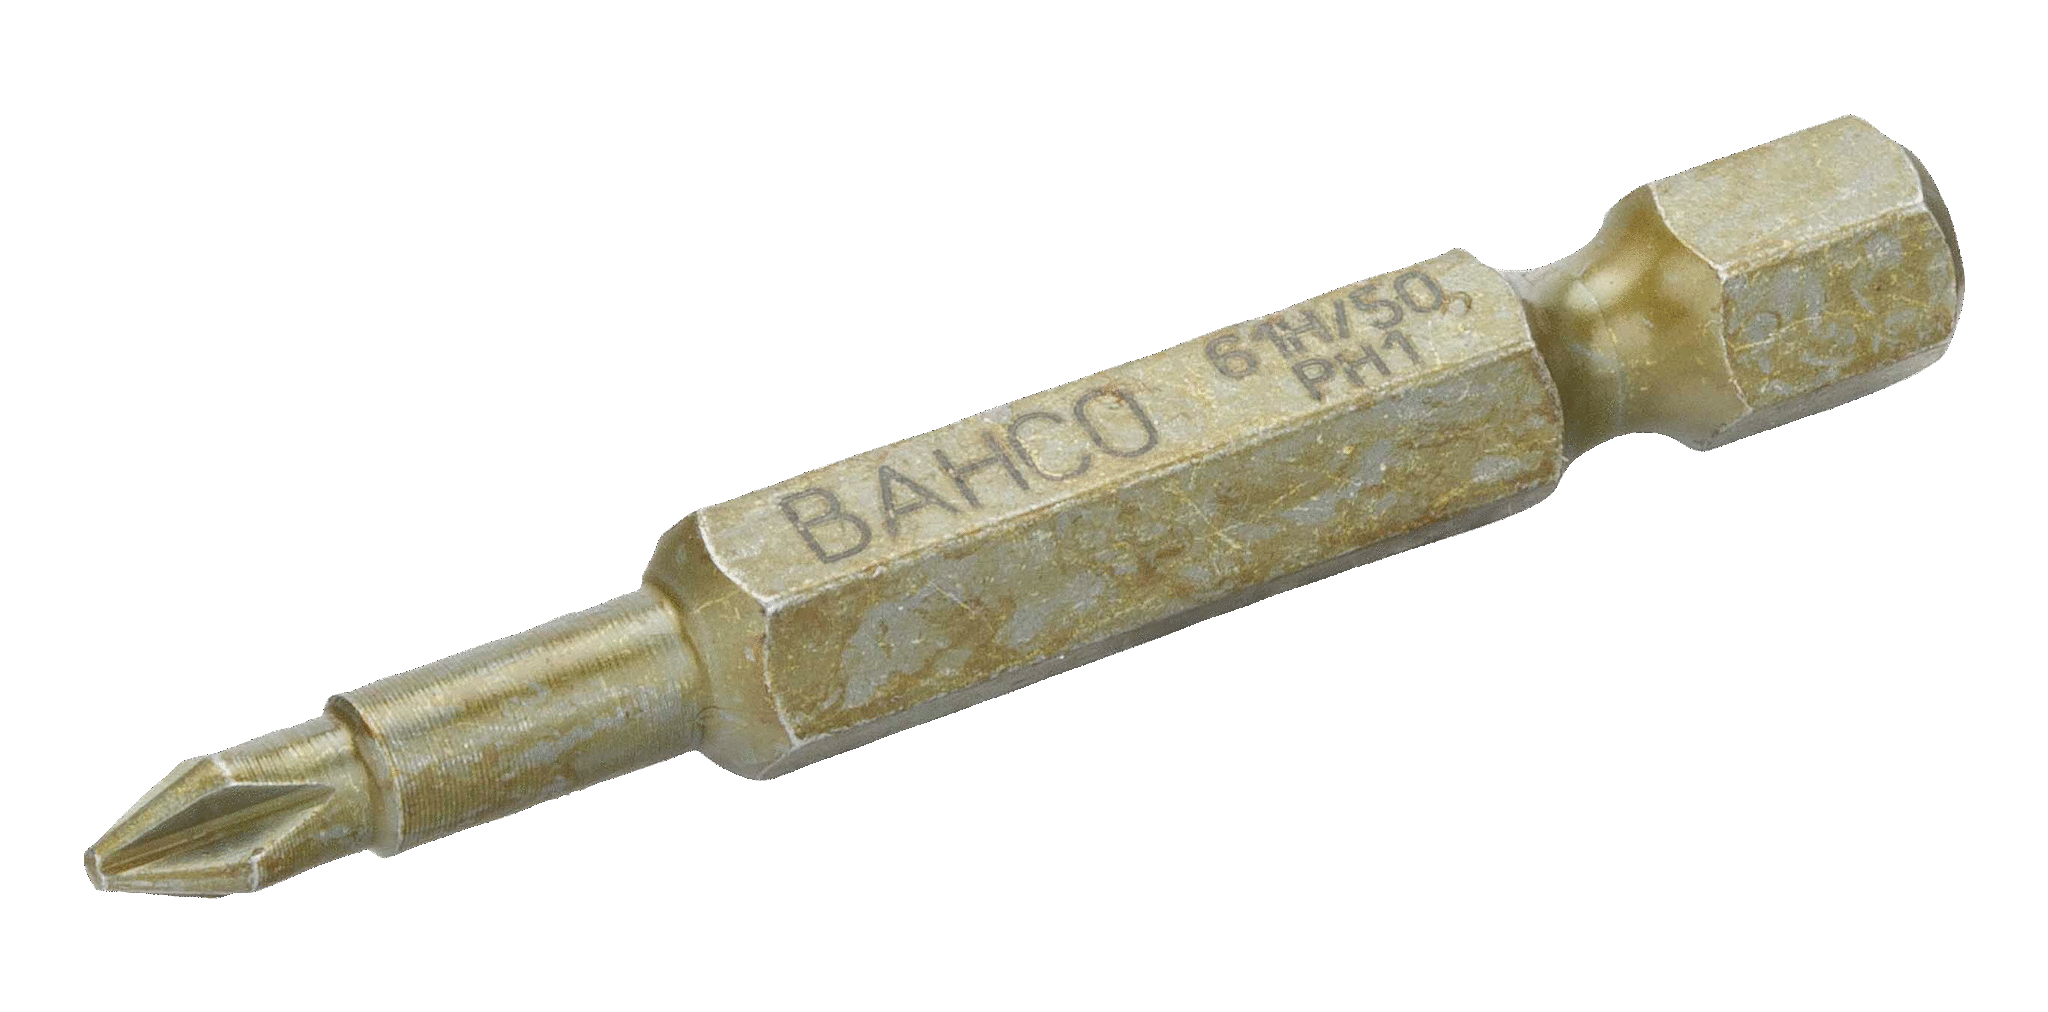 картинка Особо прочные торсионные биты для отверток Phillips, 50 мм BAHCO 61H/50PH1 от магазина "Элит-инструмент"